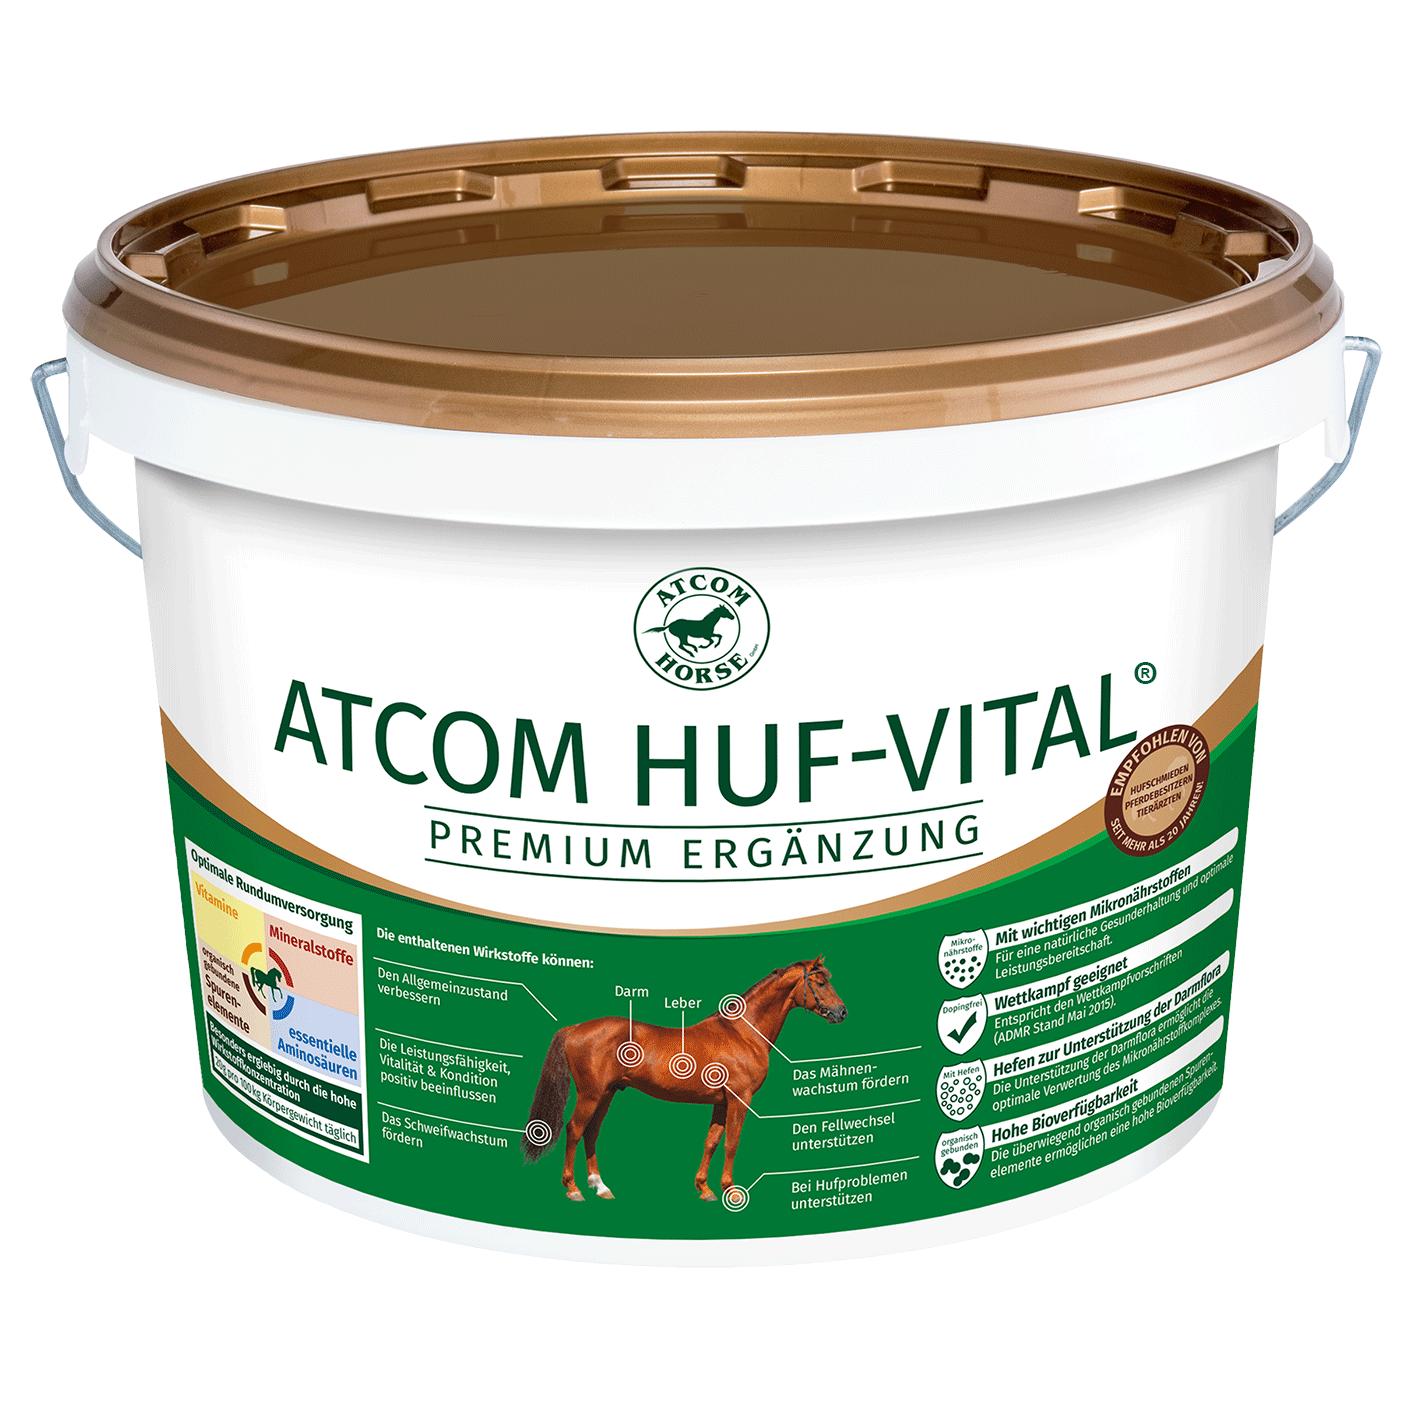 Atcom HUF-VITAL - 25 Kilogramm